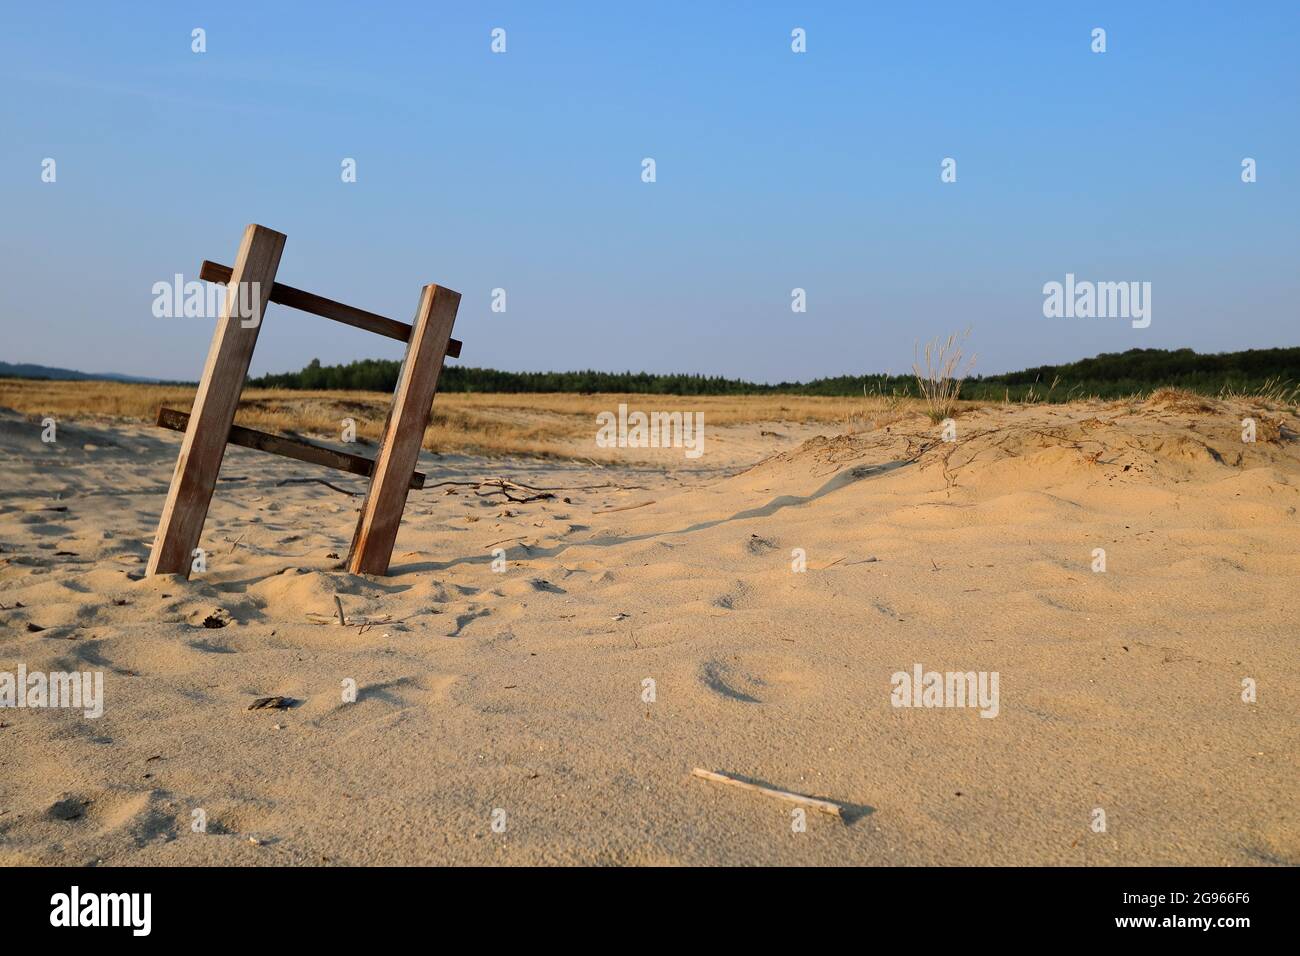 Abandoned wooden ladder on sandy dry area, Bledowska Desert in Poland, desertification on the Earth. Stock Photo